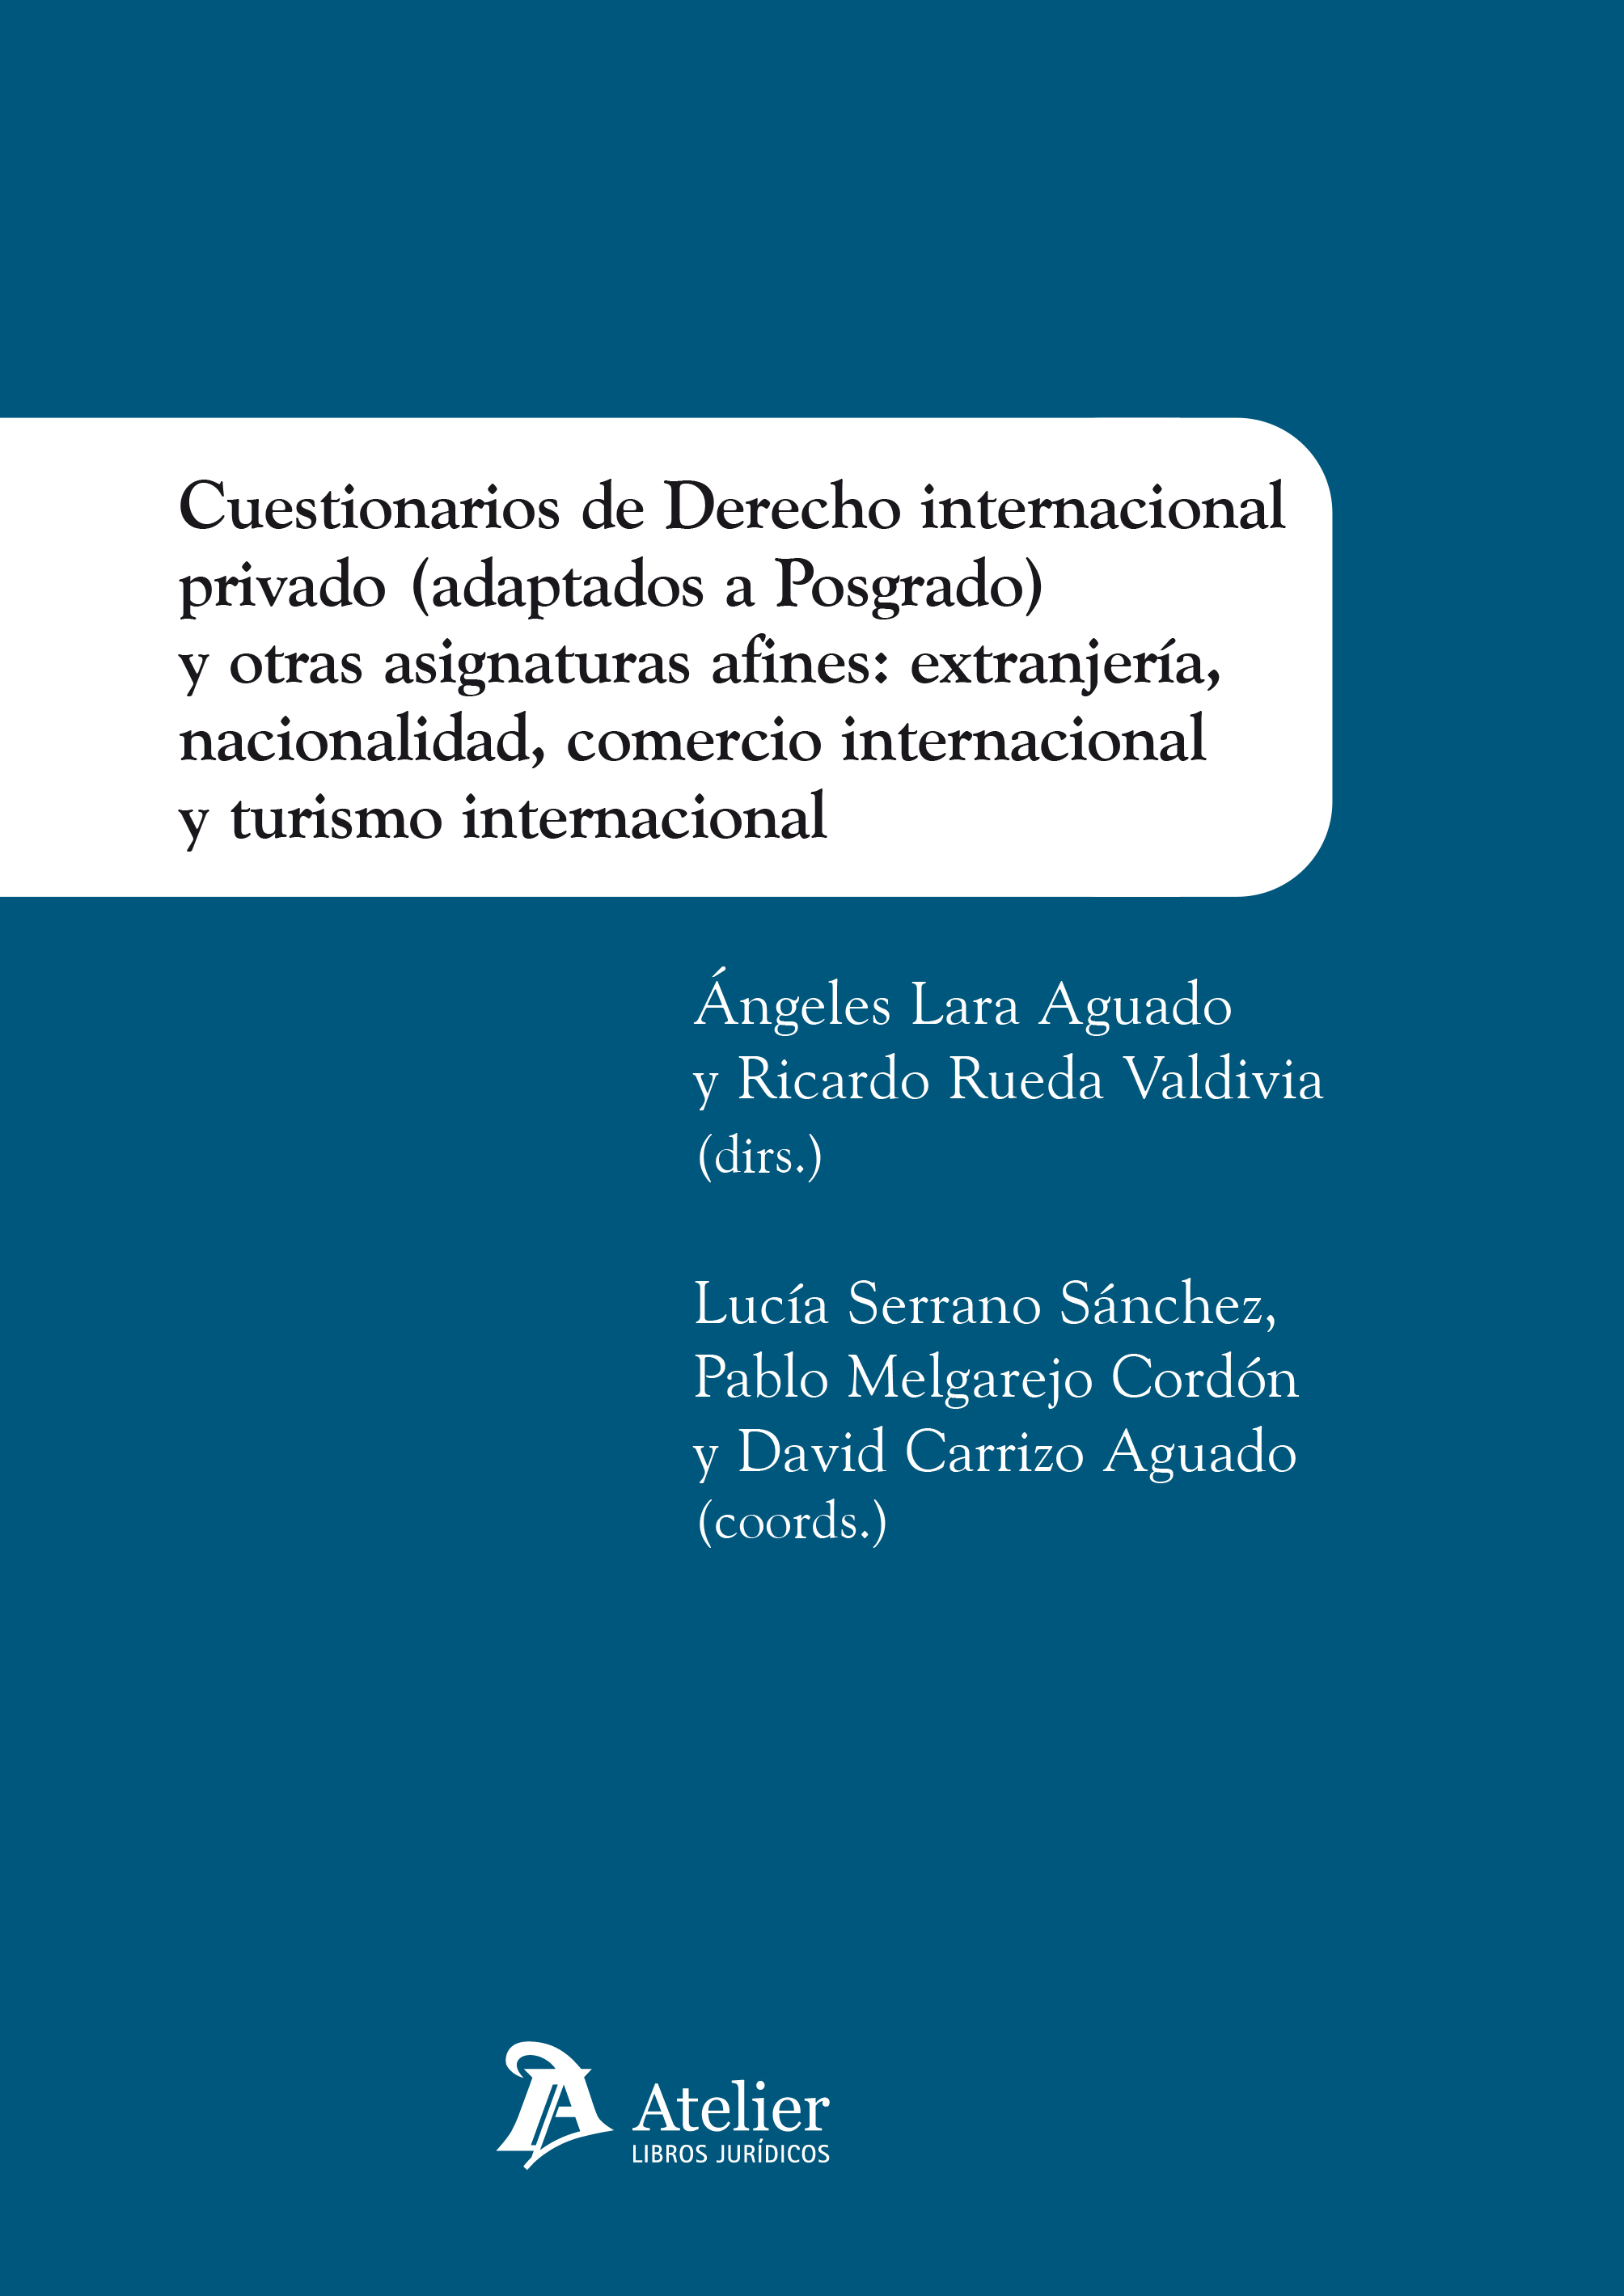 Cuestionarios de Derecho Internacional Privado (adaptados a Posgrado) y otras asignaturas afines